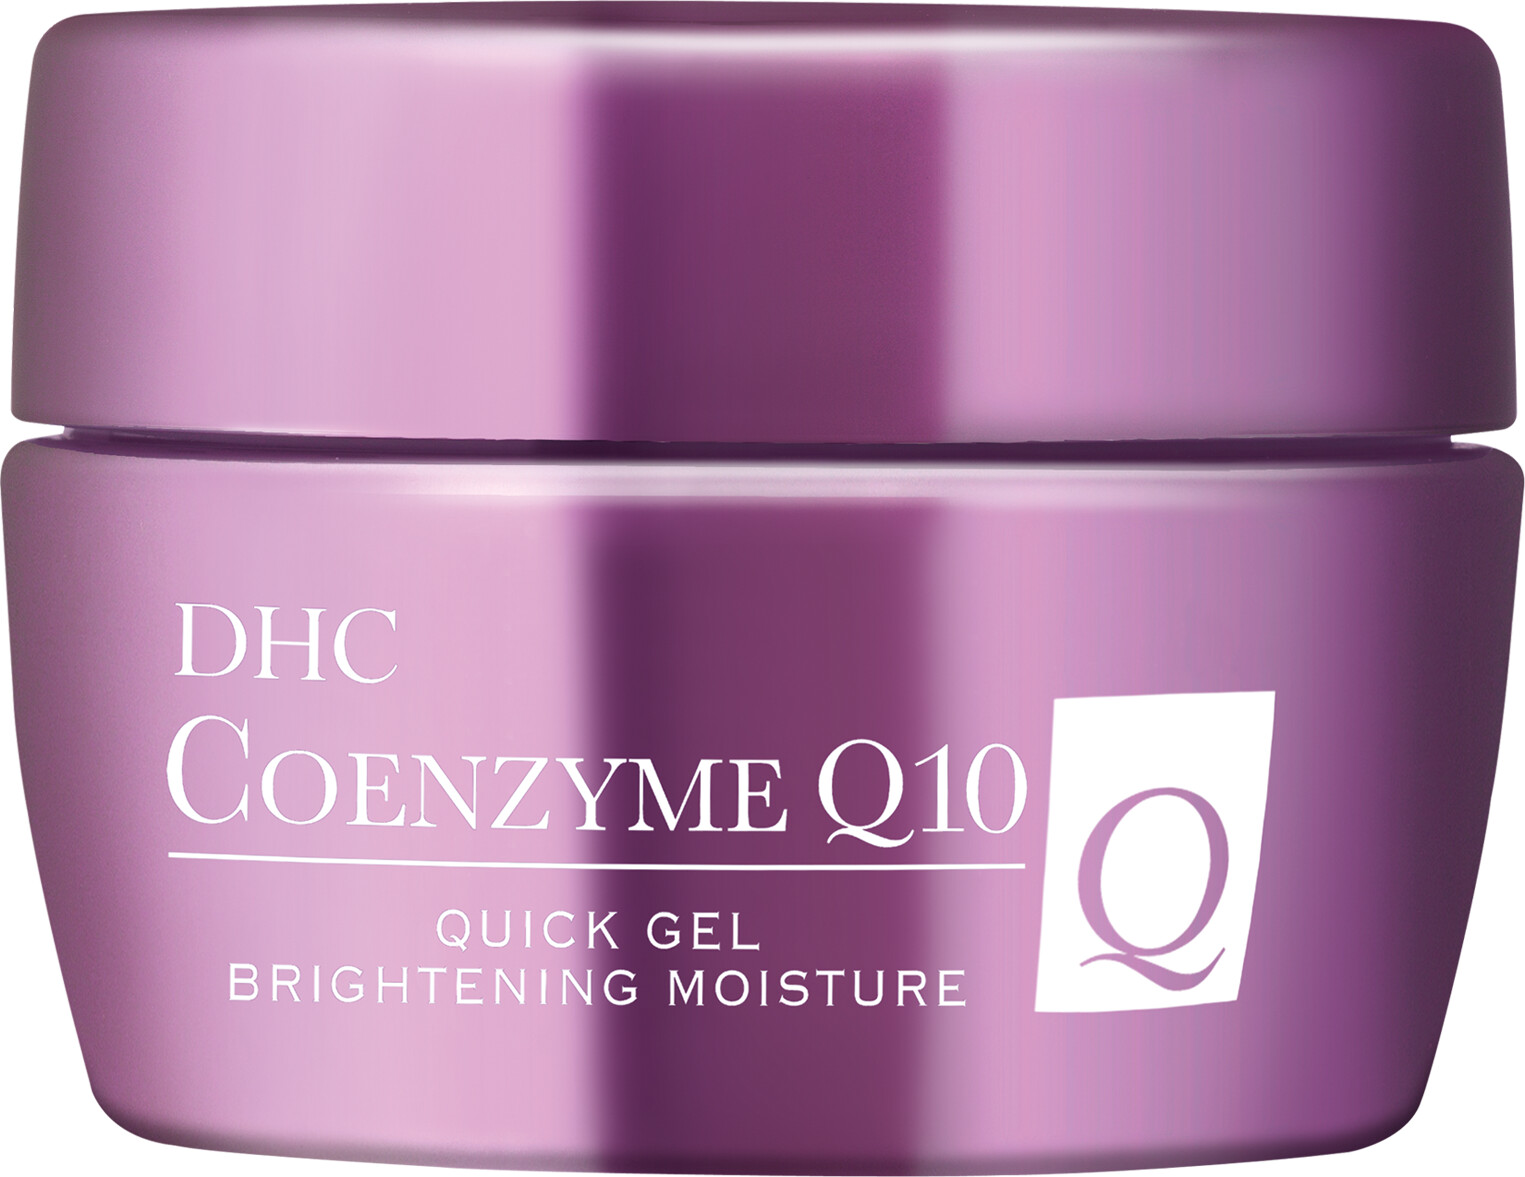 DHC Coenzyme Q10 Quick Gel Brightening Moisture 100g